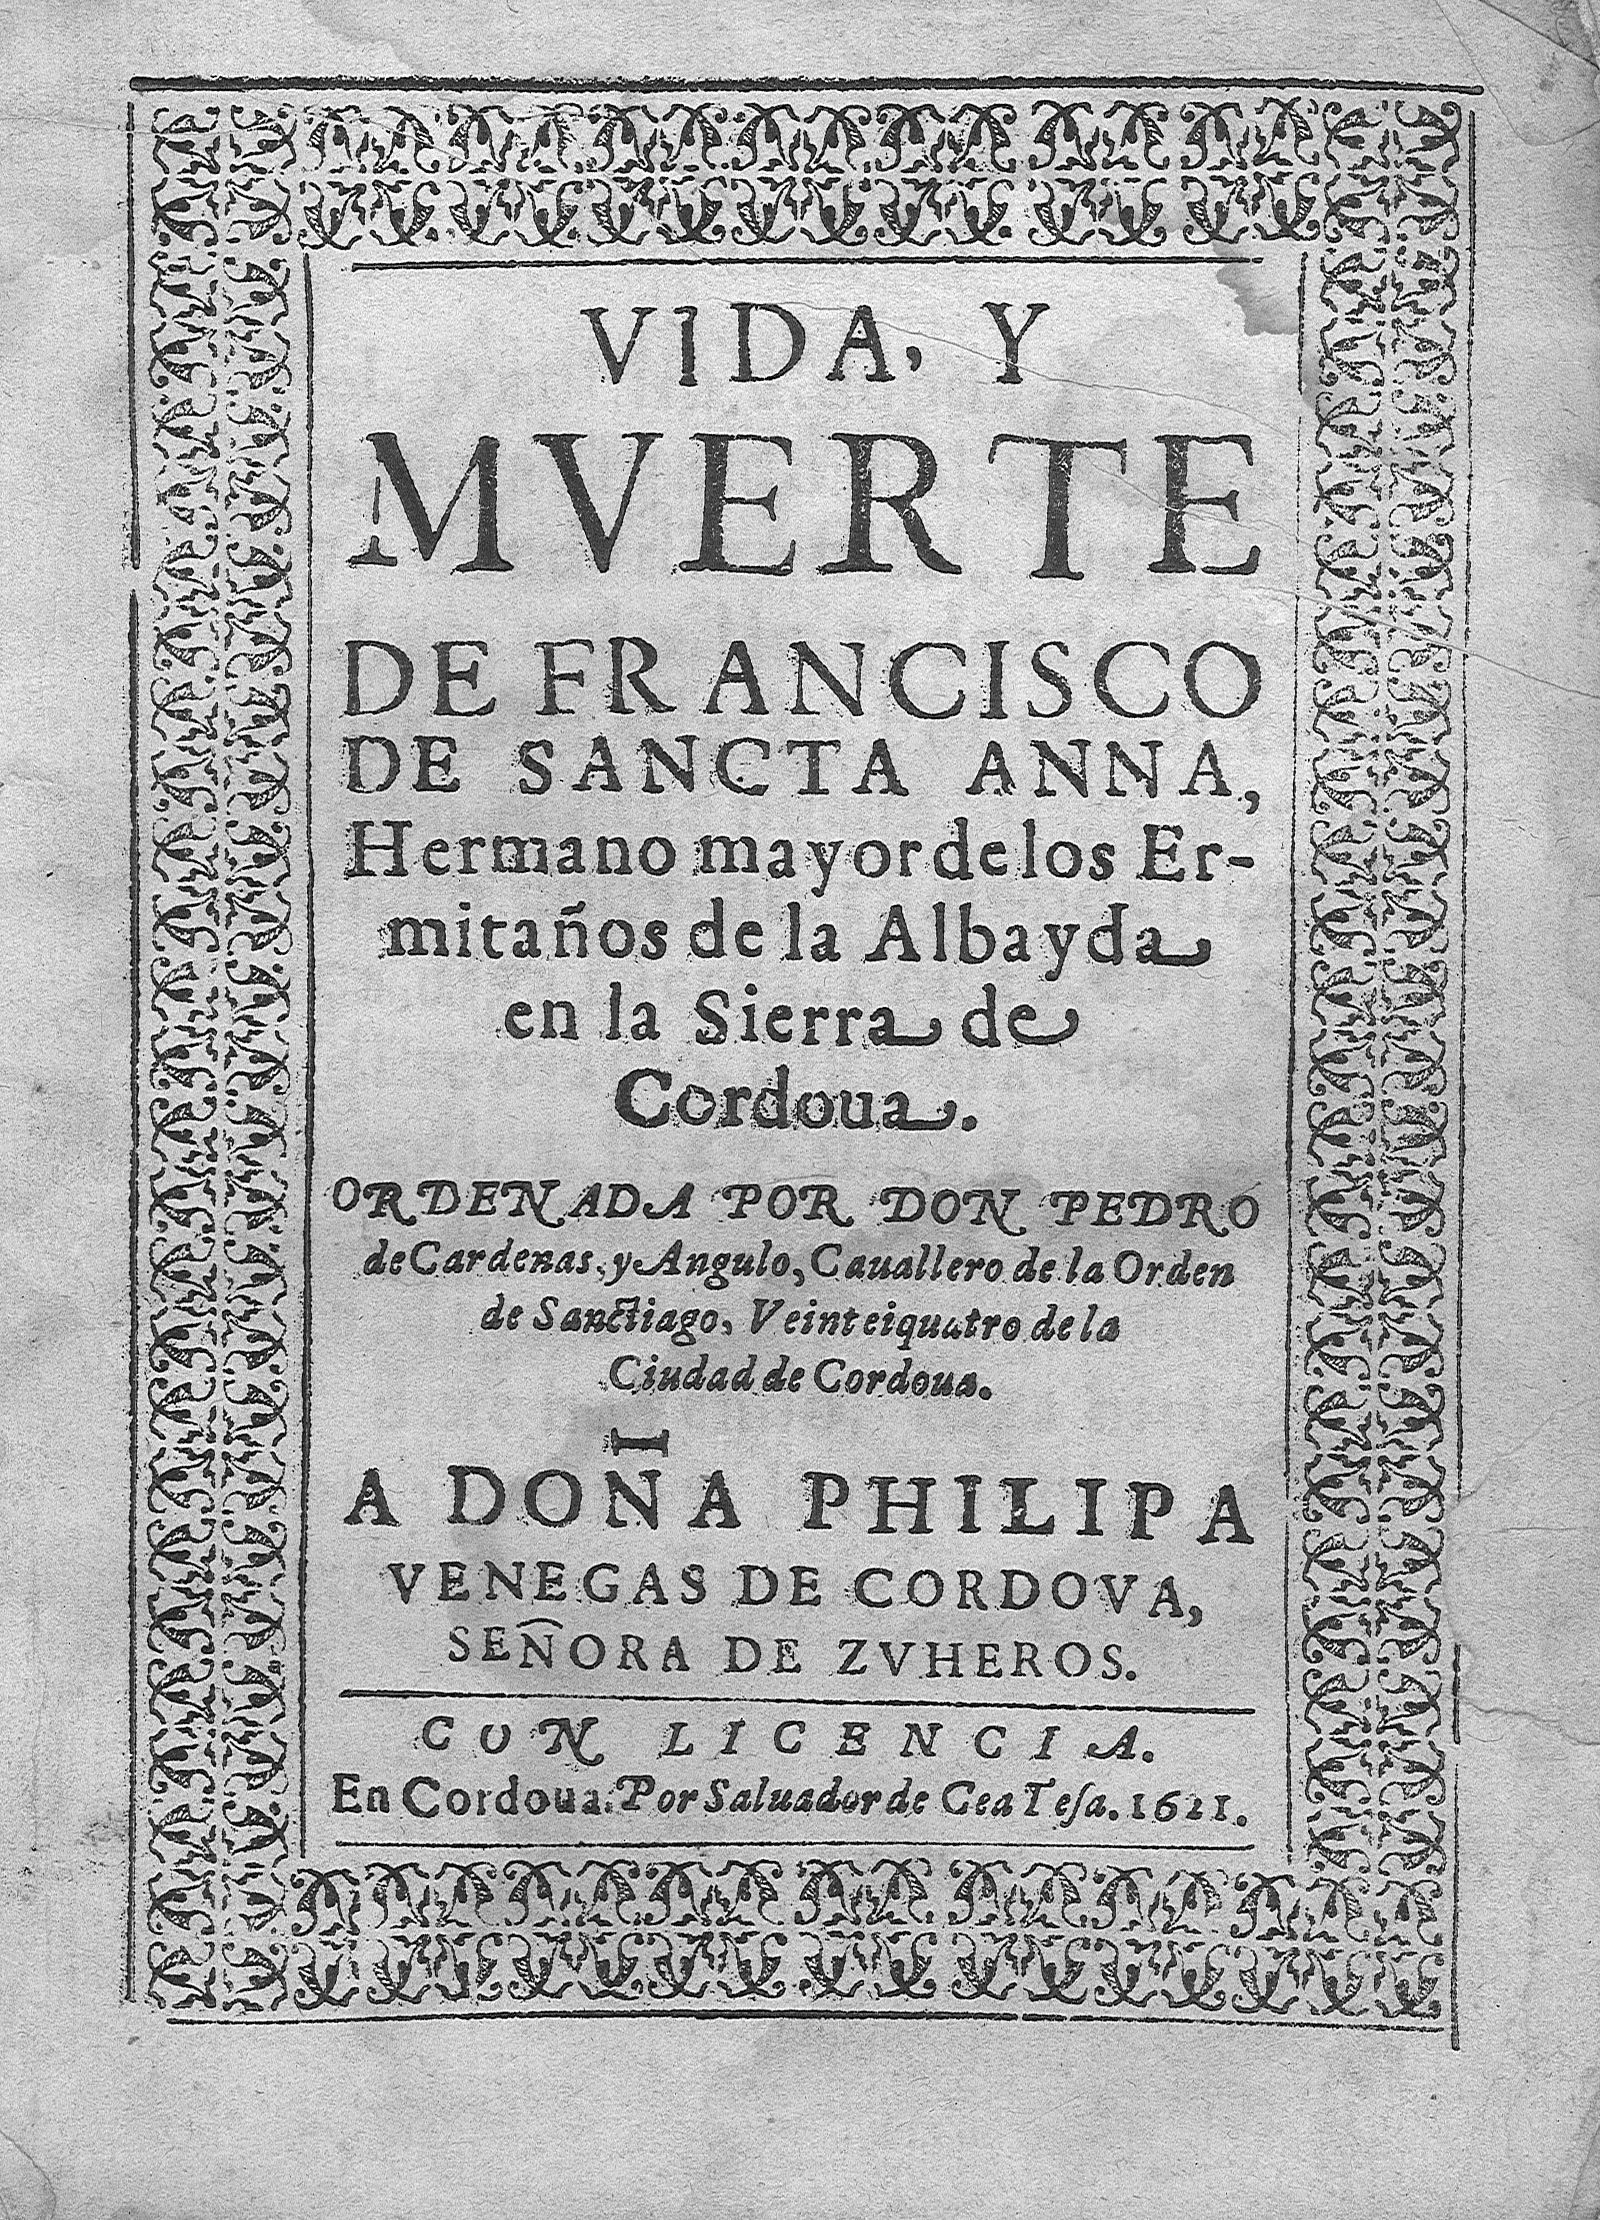 Vida, y muerte de Francisco de Sancta Anna Hermano mayor de los Ermitaños de la Albayda en la Sierra de Cordoua